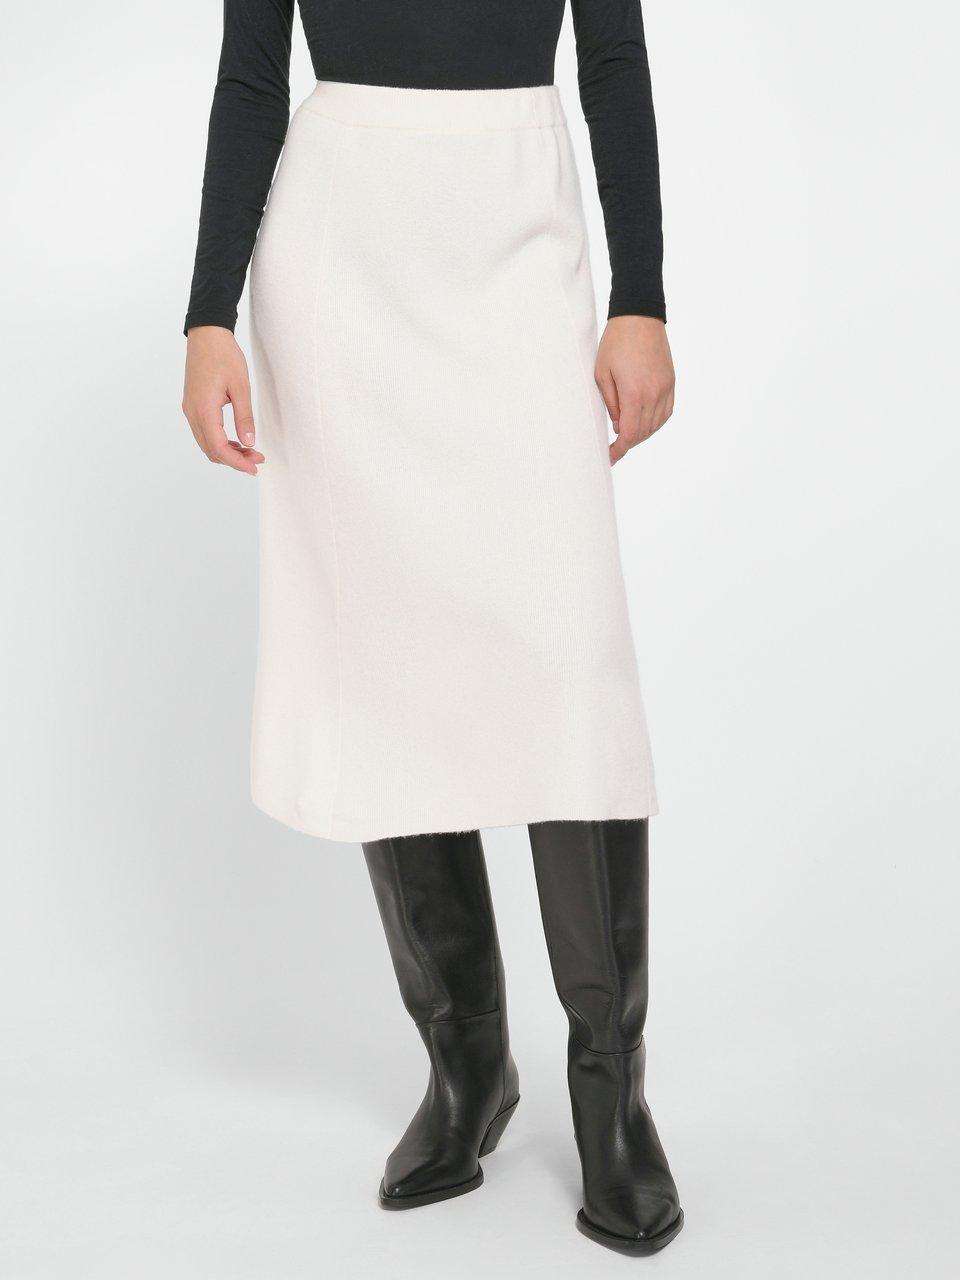 Трикотажная юбка из 100% кашемира премиум-класса.